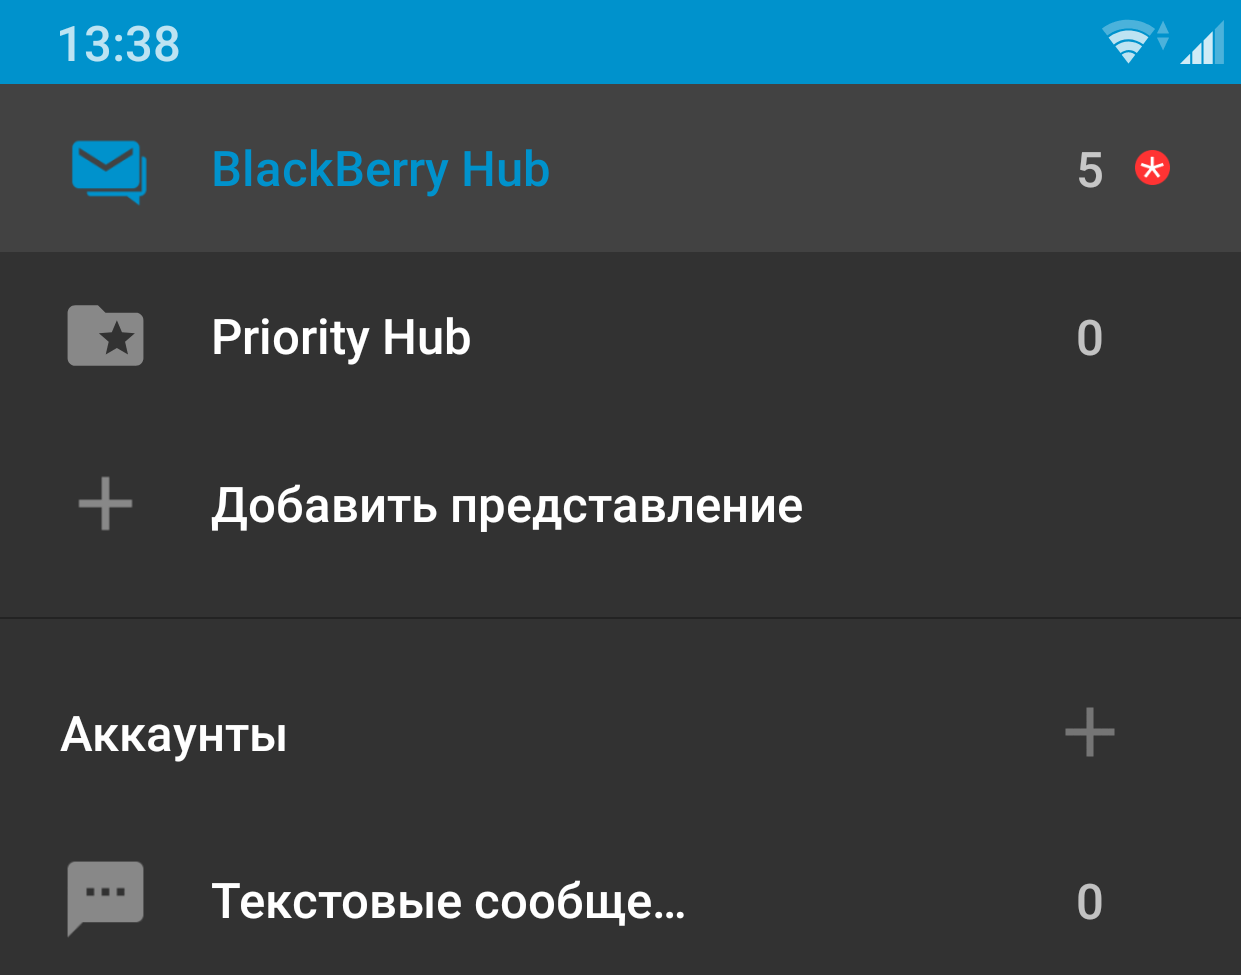 Priority Hub и Blackberry